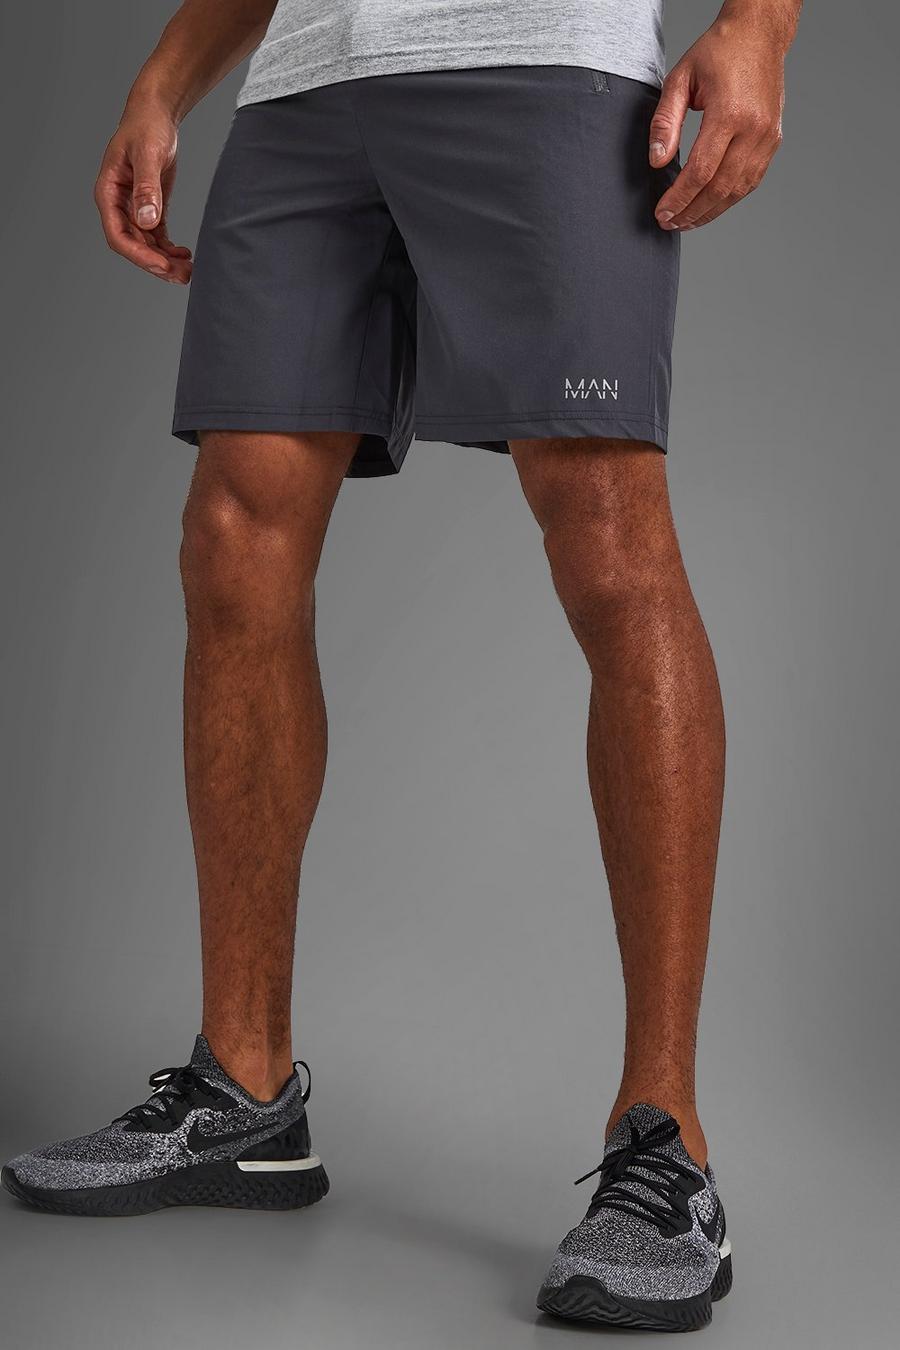 MAN Active Shorts mit Reißverschlusstaschen, Anthrazit grey